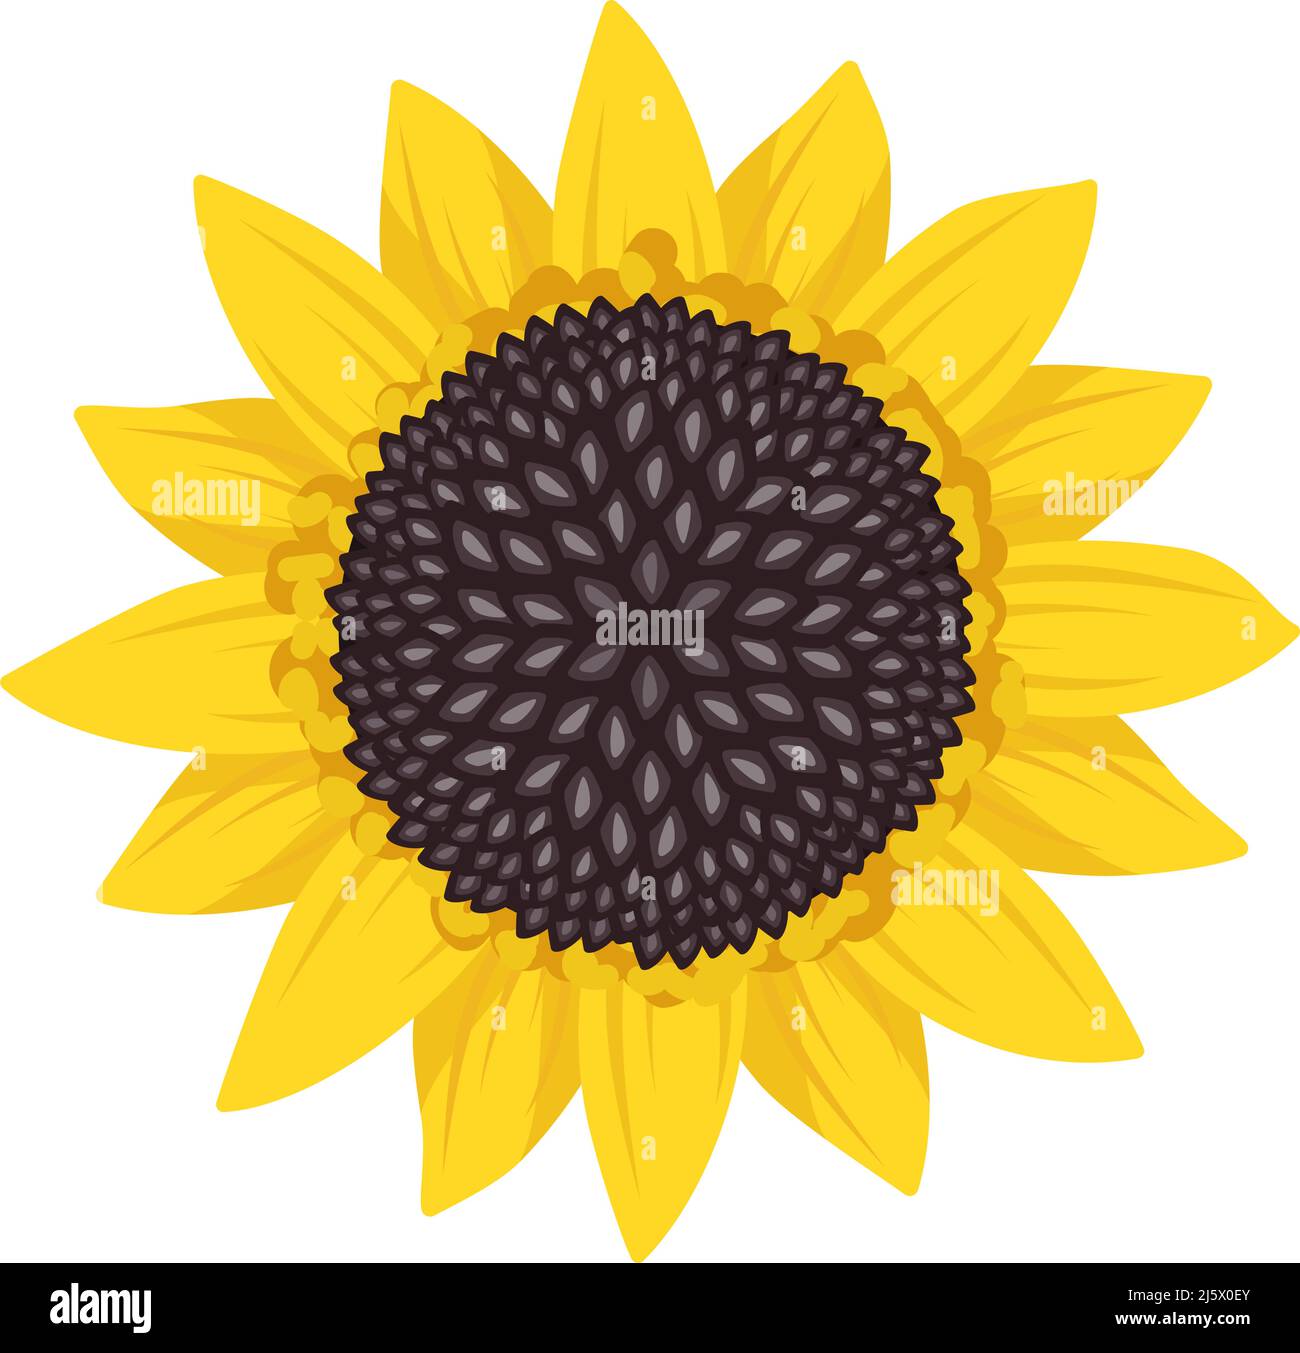 Helle Sonnenblumenblume mit gelben Blättern und schwarzen Samen. Element der Natur, Pflanze für Dekoration und Design. Vektorgrafik flach Stock Vektor